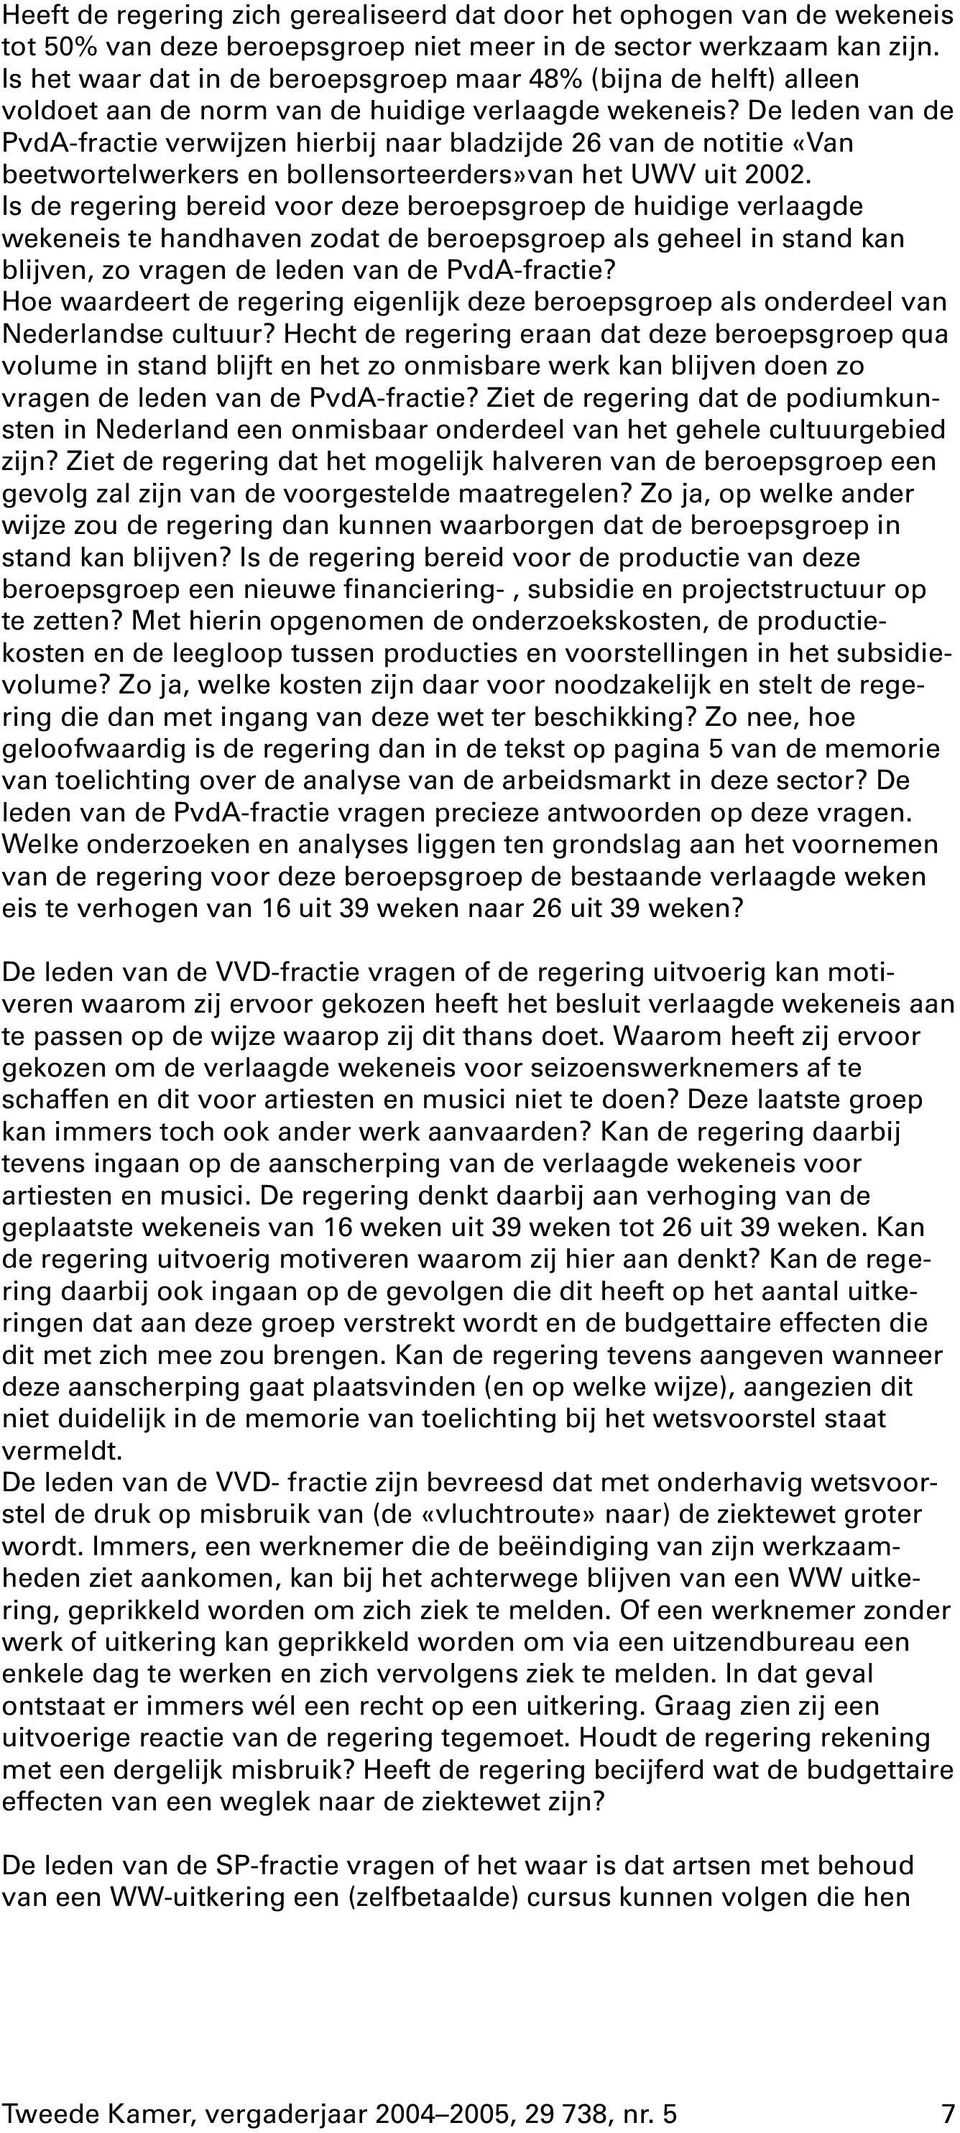 De leden van de PvdA-fractie verwijzen hierbij naar bladzijde 26 van de notitie «Van beetwortelwerkers en bollensorteerders»van het UWV uit 2002.